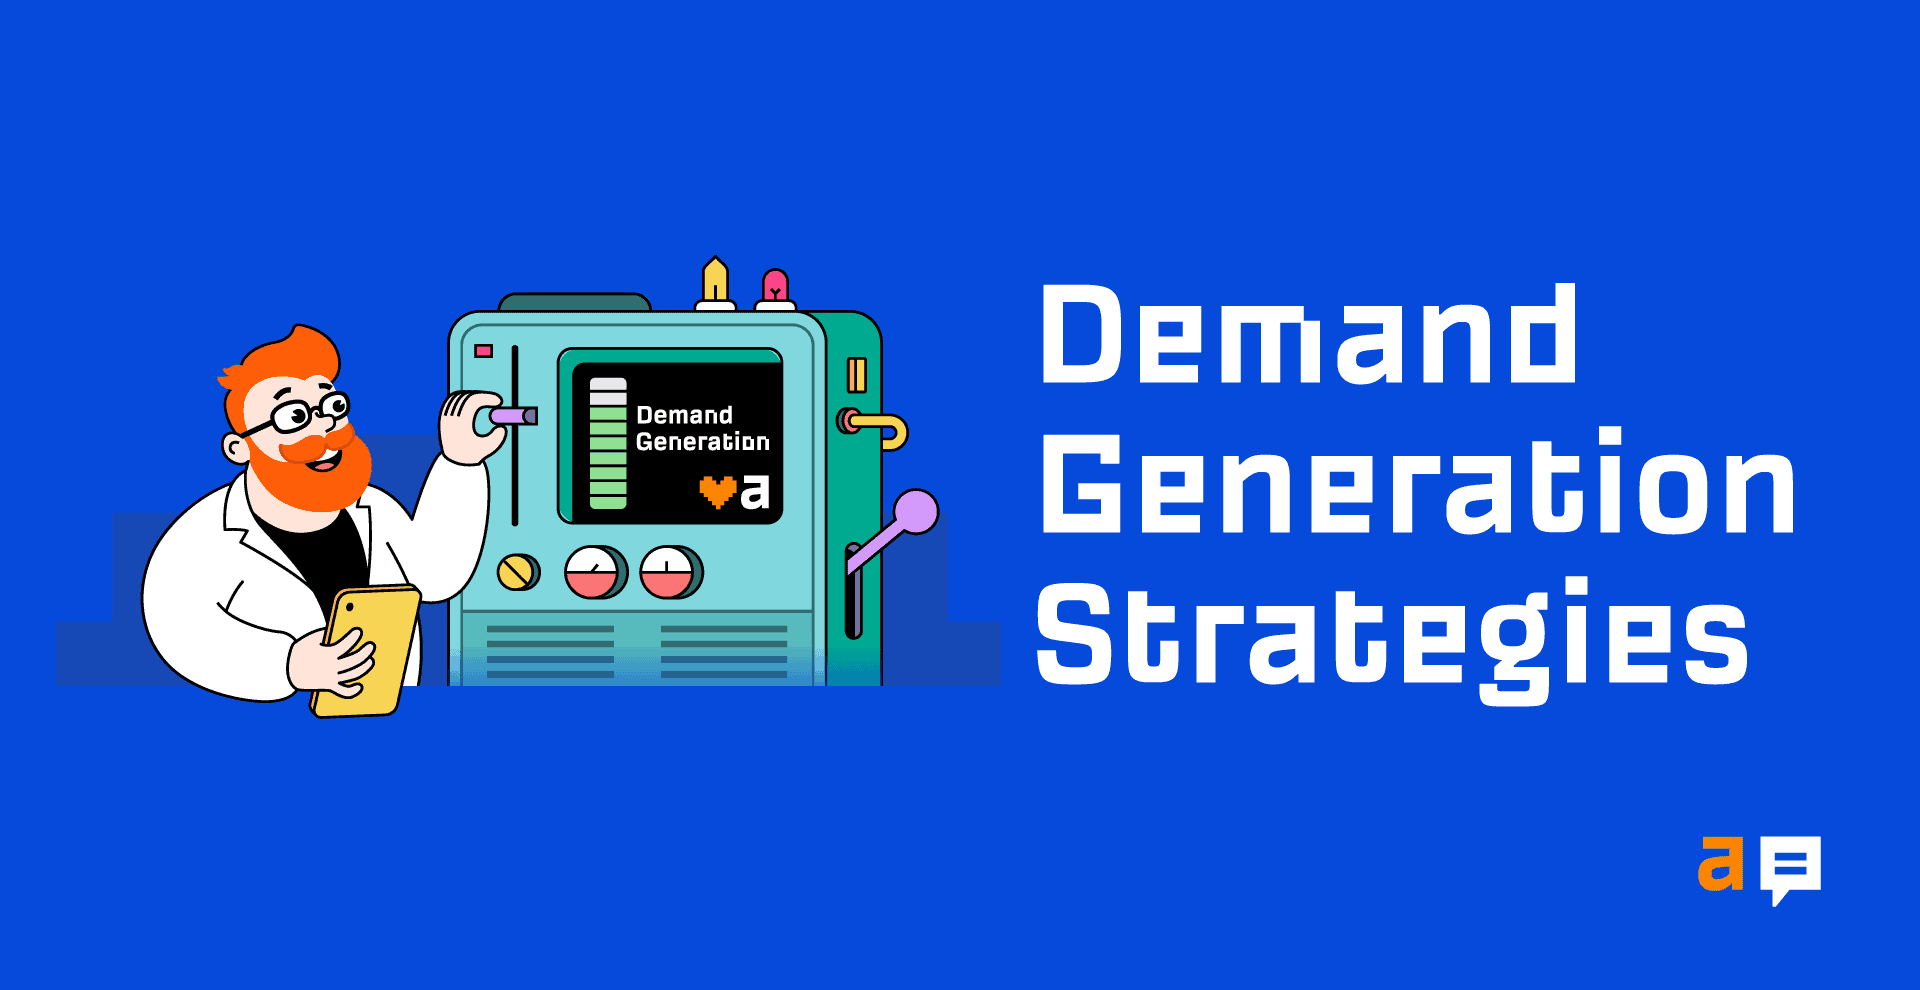 Demand Generation 101: 5 Strategies That Work